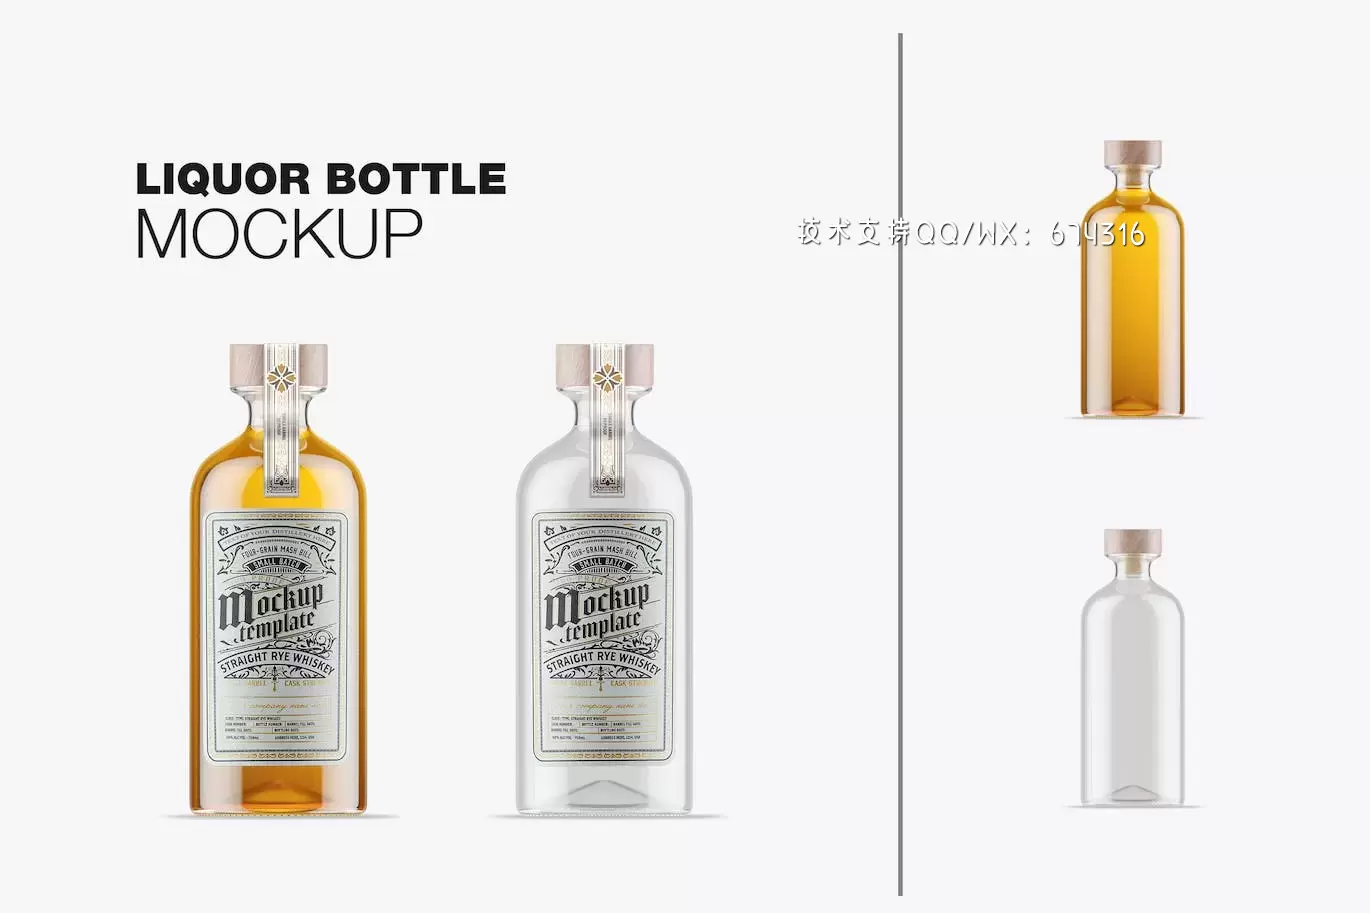 玻璃酒瓶包装设计样机 (PSD)免费下载